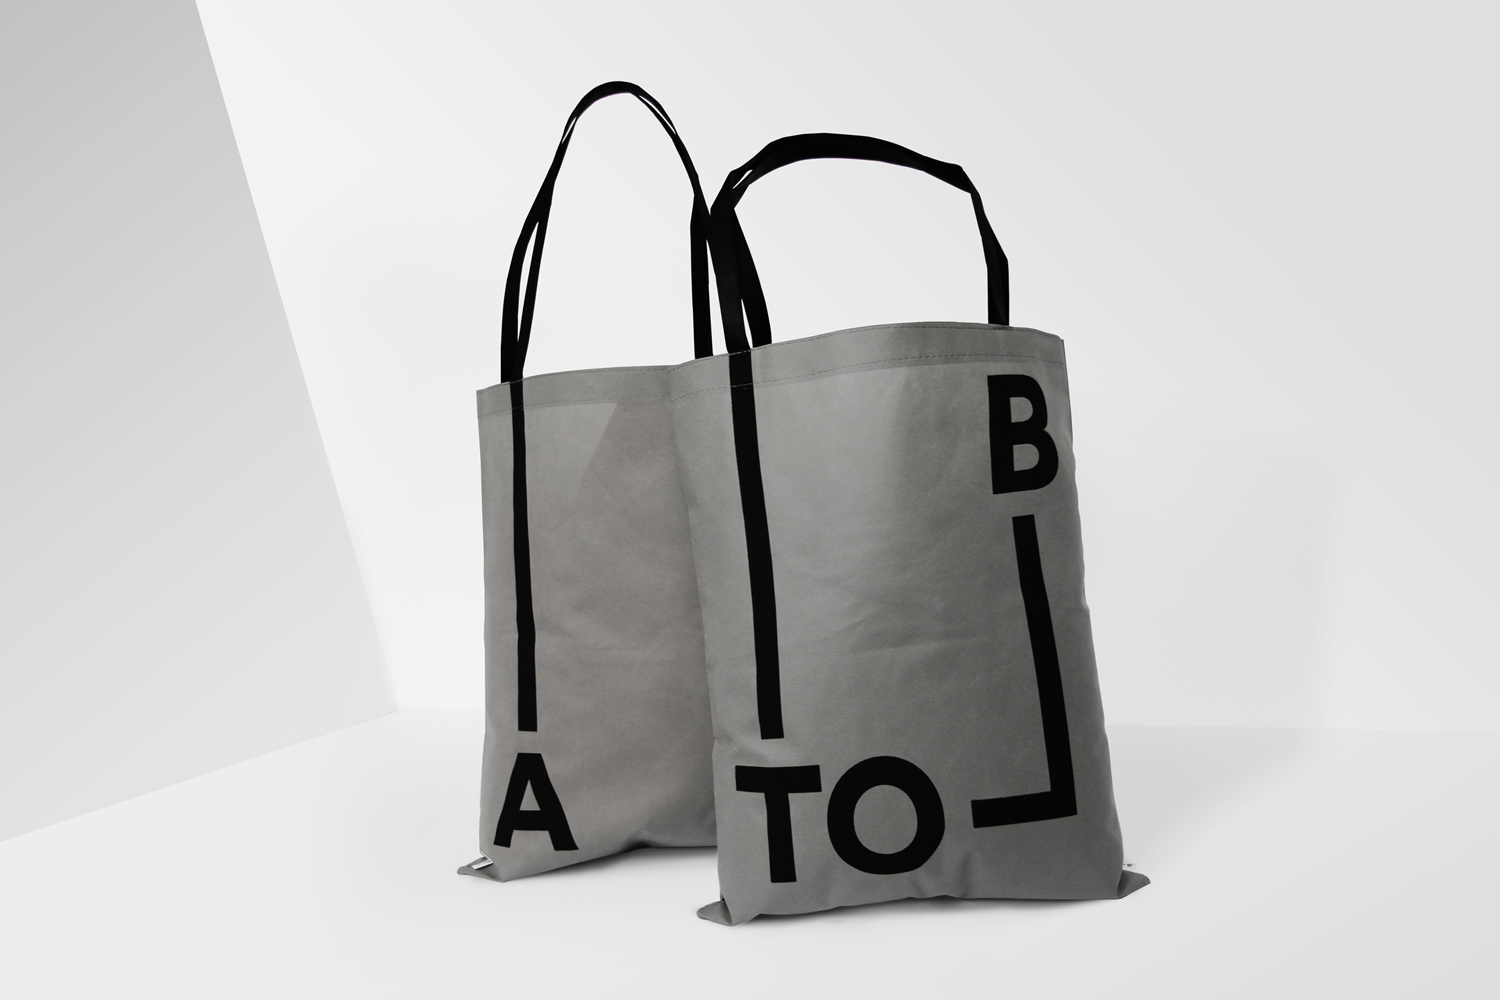 Tote Bag Design – A-TO-B by Stockholm Design Lab, Sweden